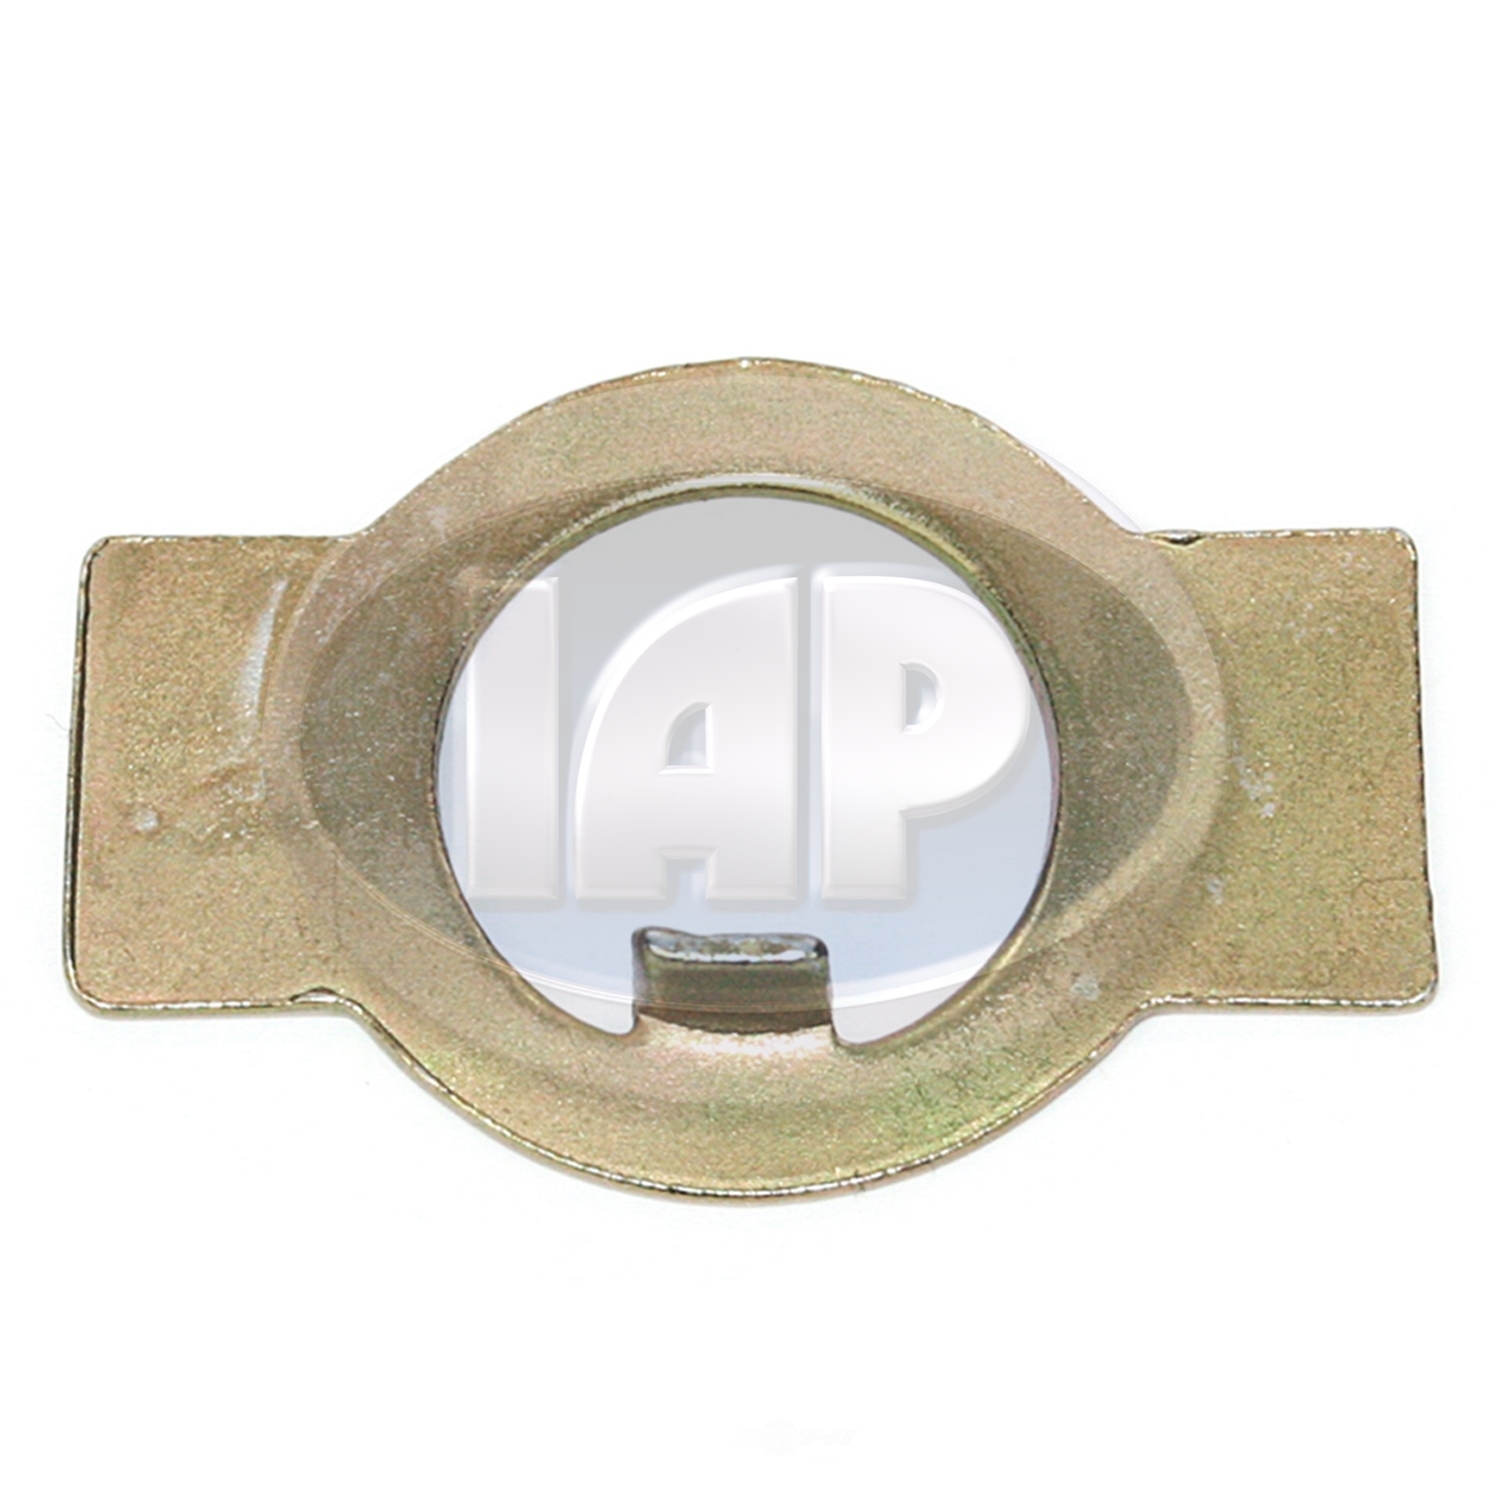 IAP/KUHLTEK MOTORWERKS - Axle Nut Lock Plate - KMS 111405681